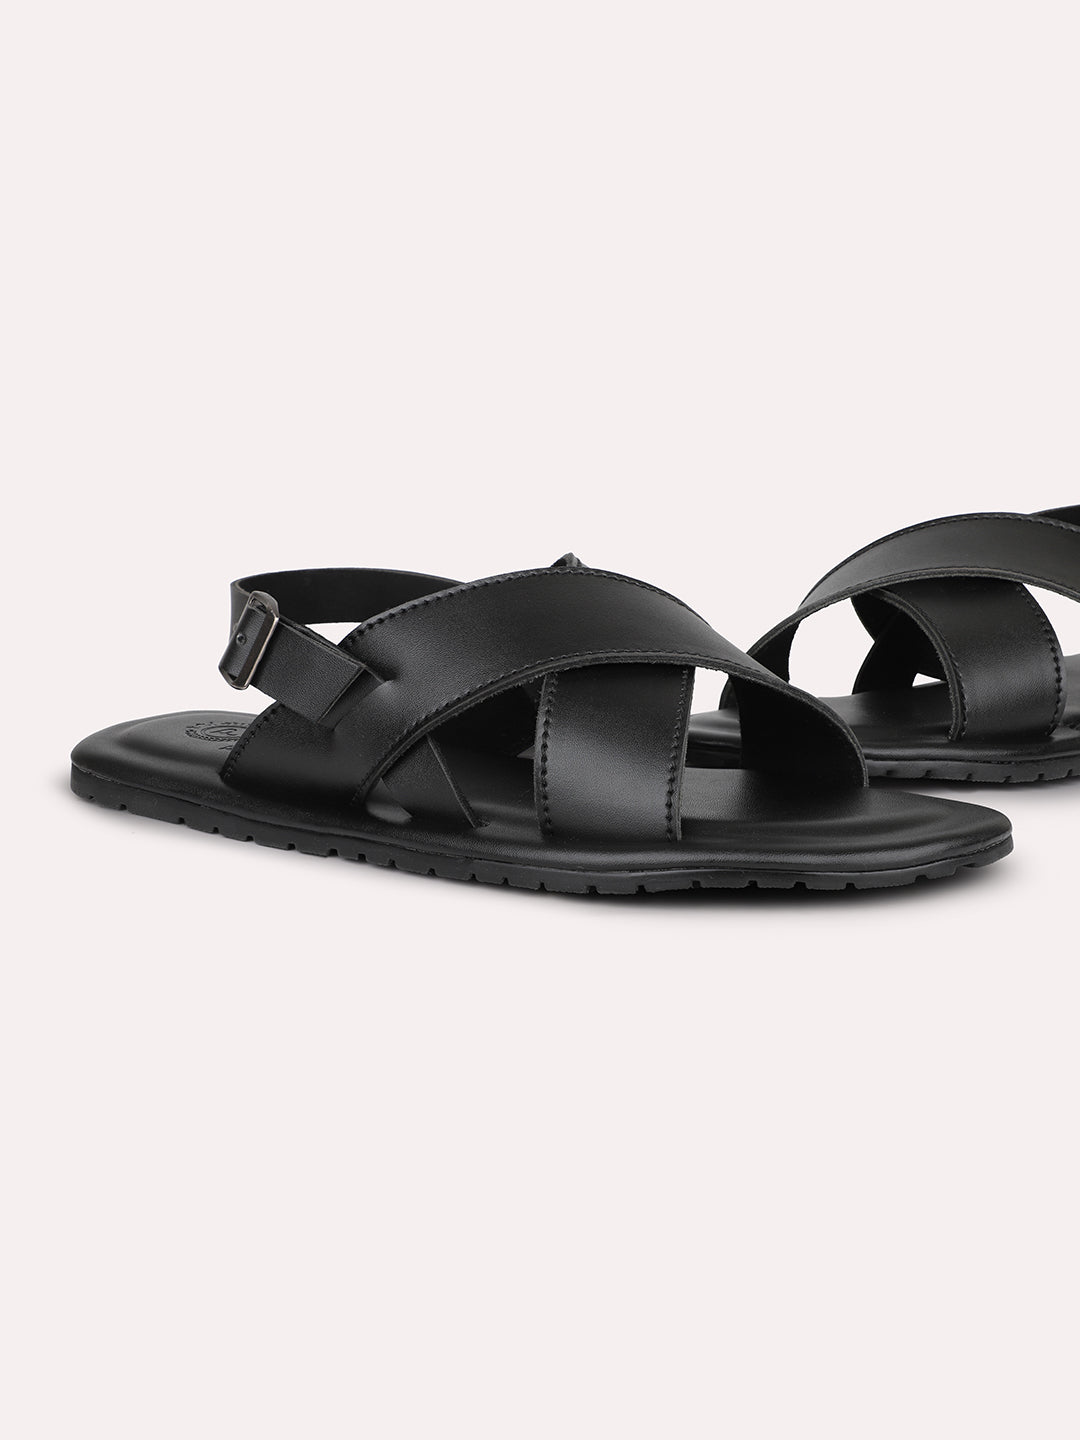 Privo Denim Black Open Toe Casual Sandal For Men